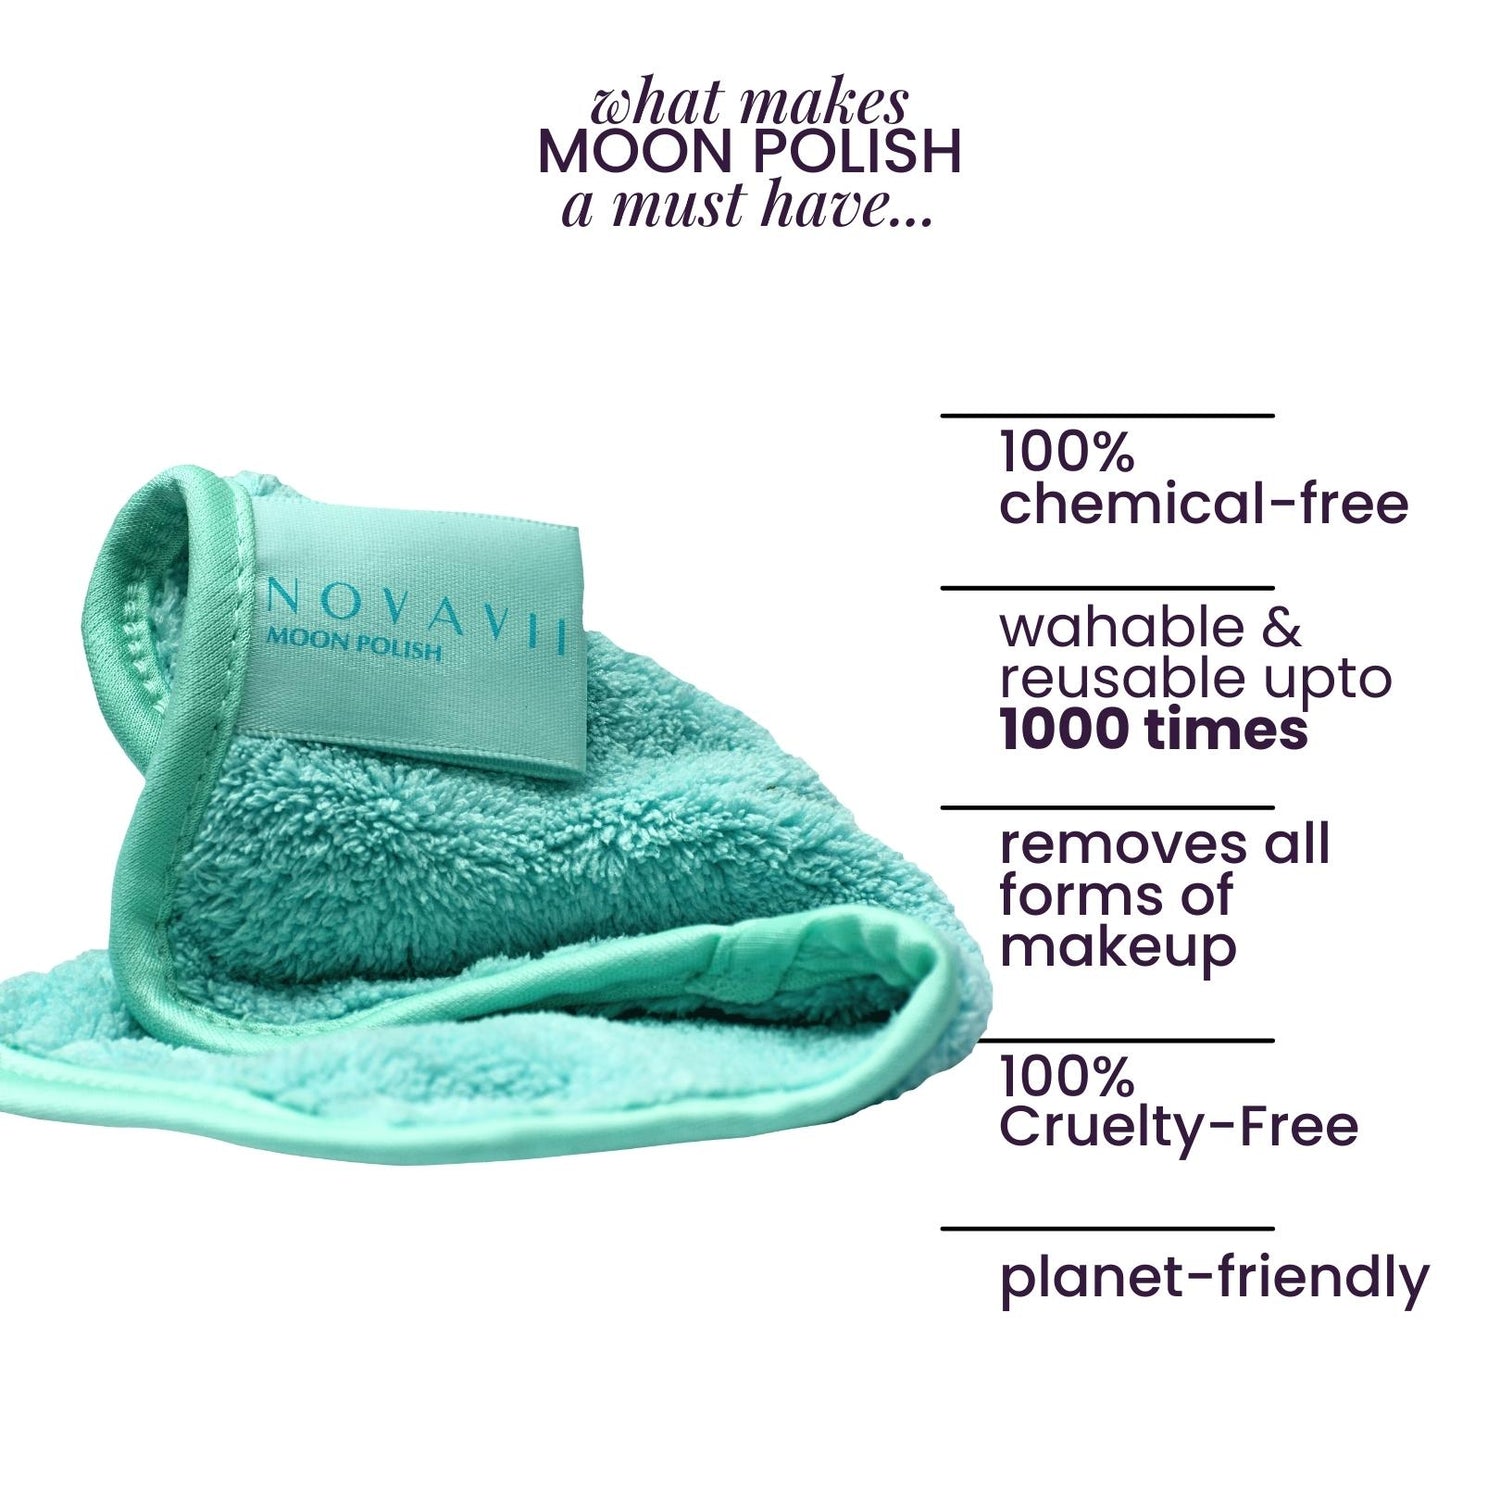 moon polish - reusable makeup remover towel